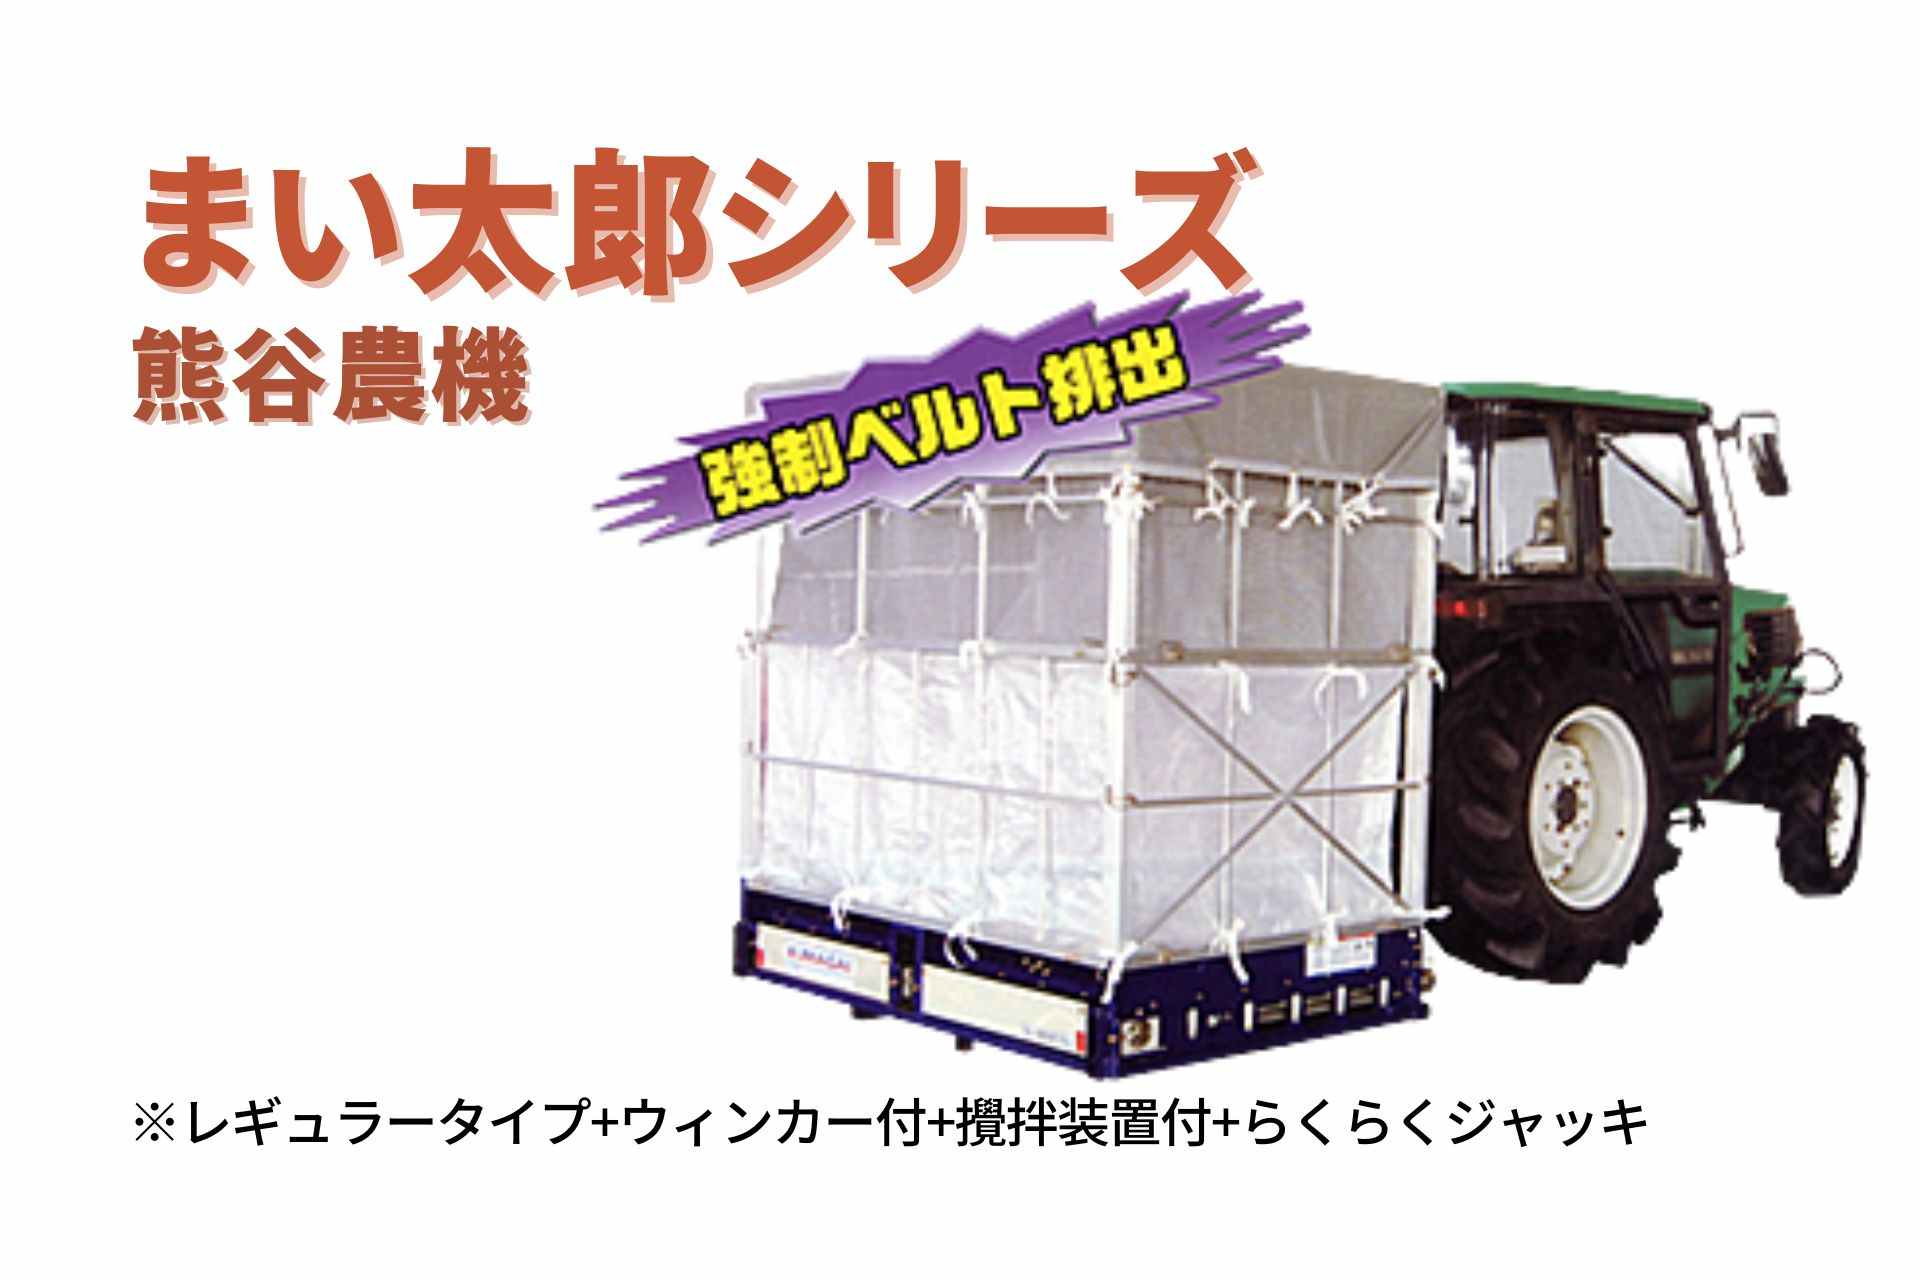 籾殻散布機 まい太郎 レギュラータイプ ウィンカー付 攪拌機能付 らくらくジャッキ MTA-40RJW 熊谷農機